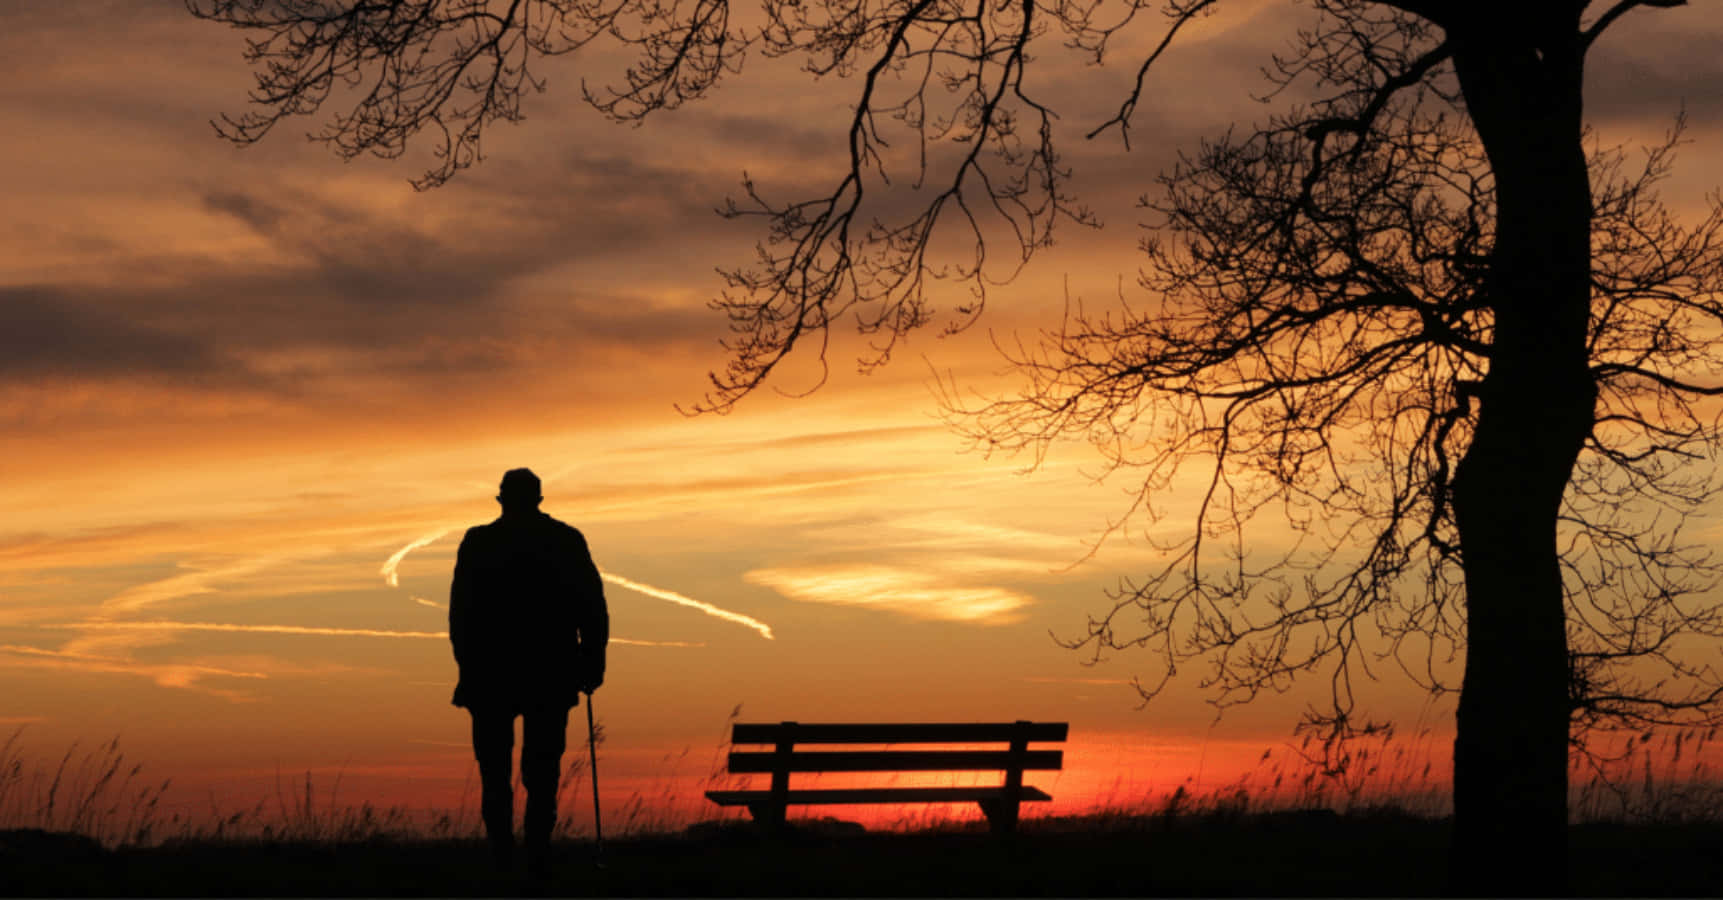 Einsamertrauriger Alter Mann Silhouette Sonnenuntergang Bild.